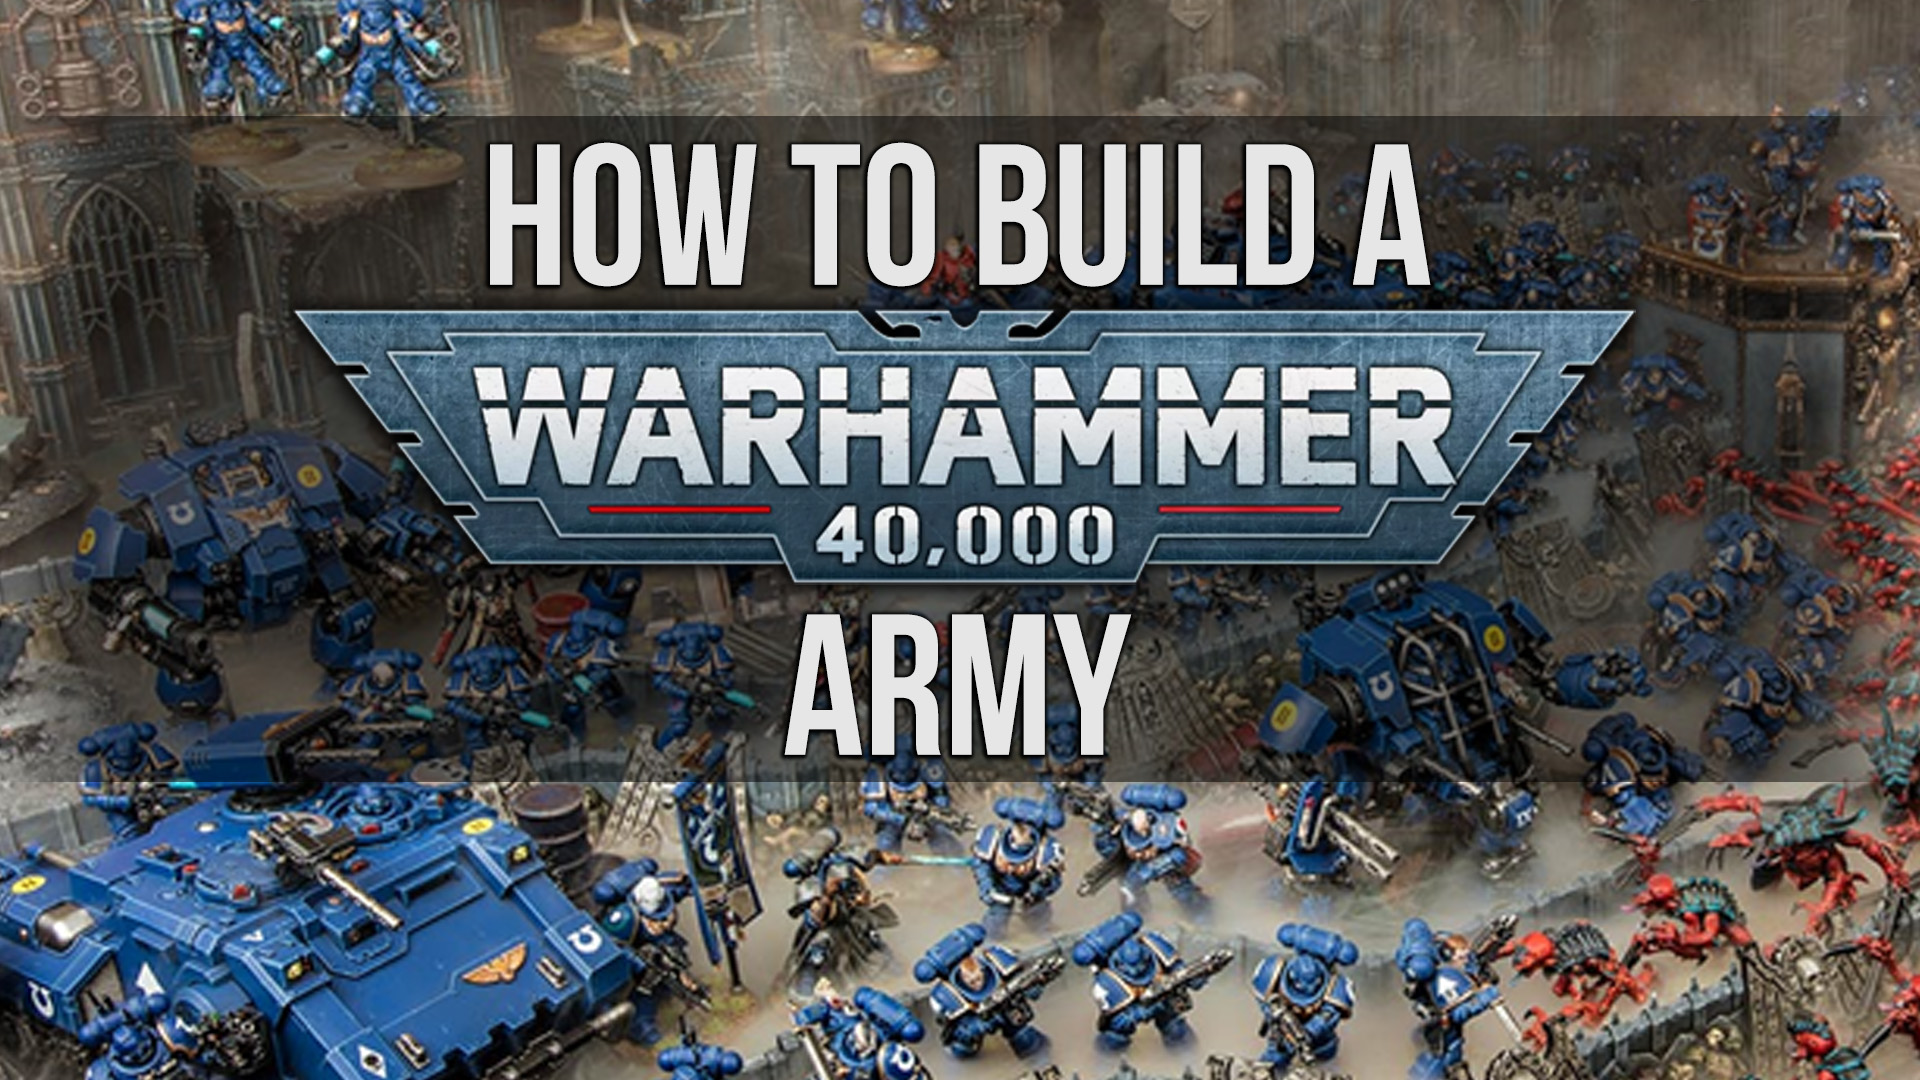 Warhammer build